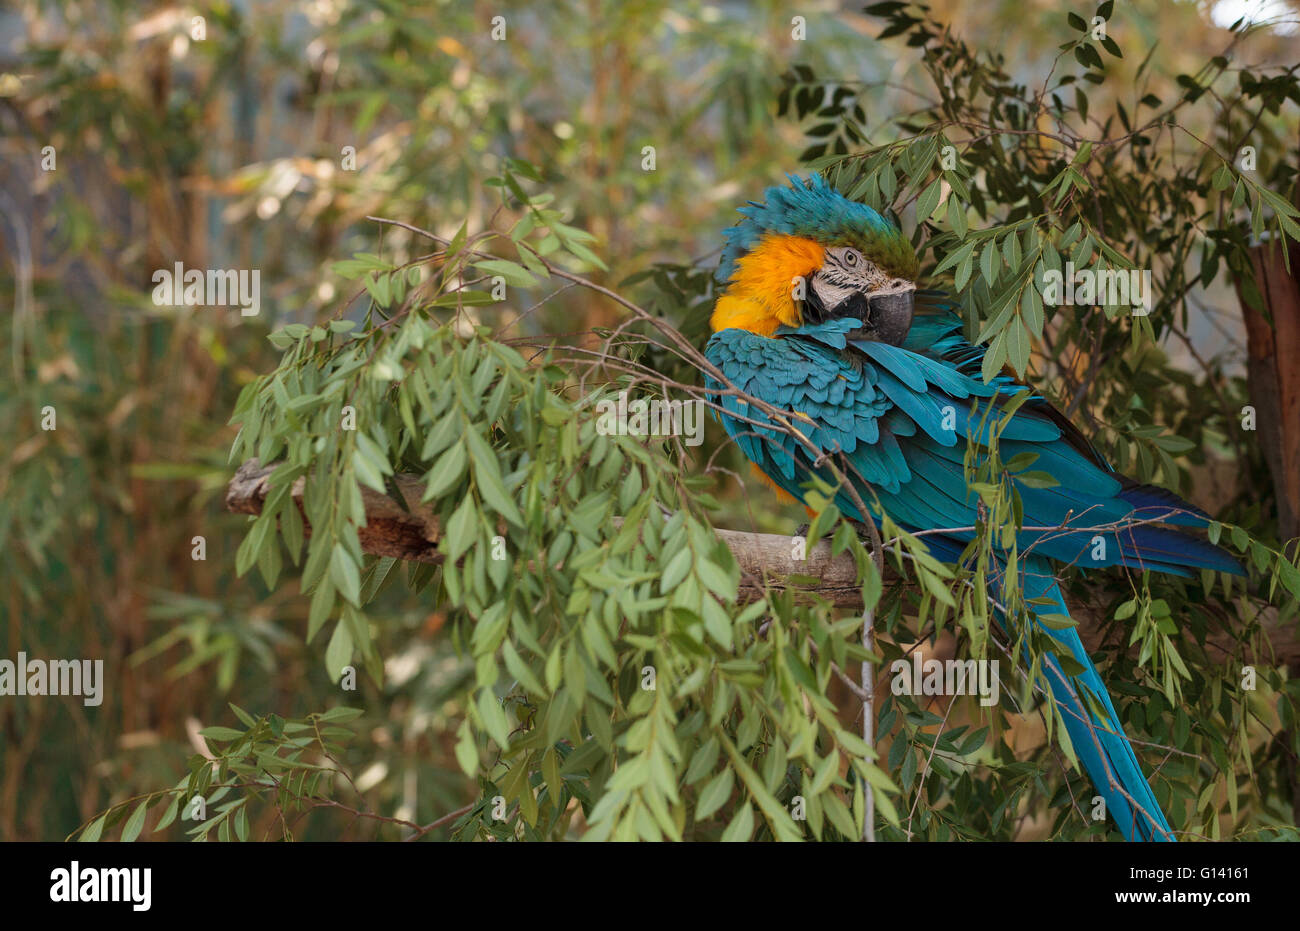 Ara bleu et jaune Ara ararauna oiseaux perches dans un arbre avec ses plumes lumineuses au titre. Banque D'Images